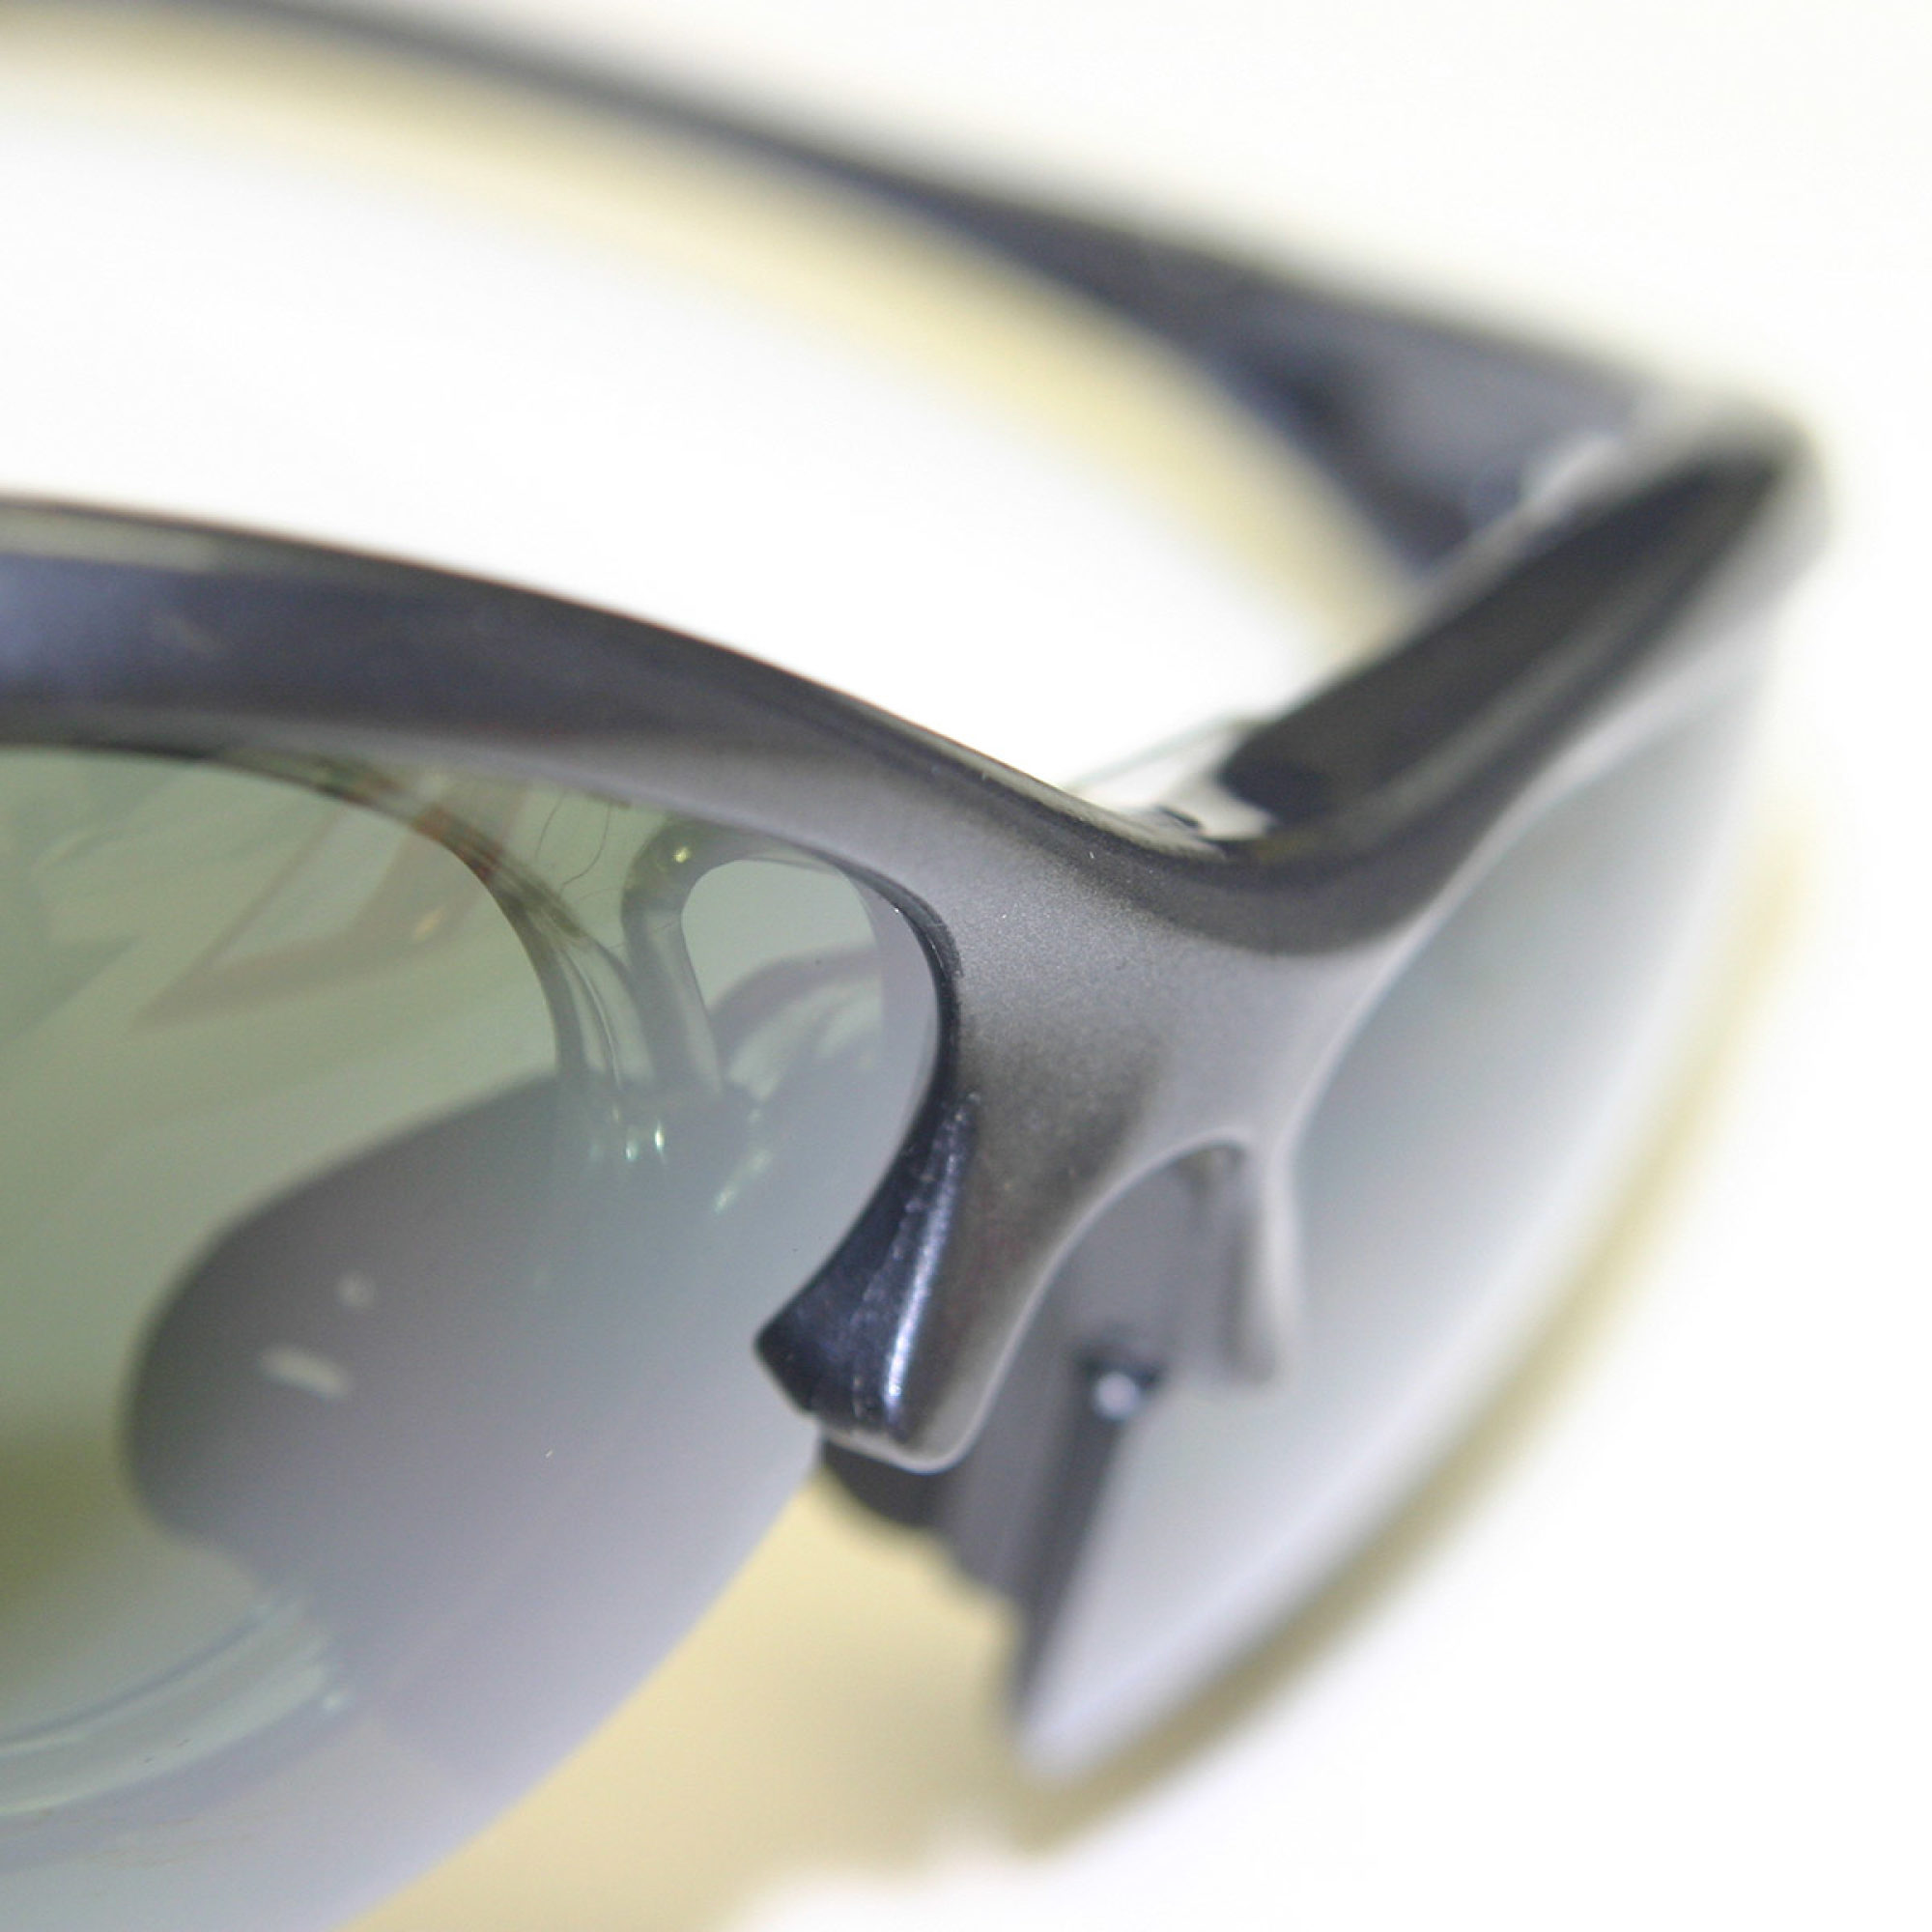 NAVIGATOR SPIDER Sportbrille, Bikebrille, UV-Lens, 30g